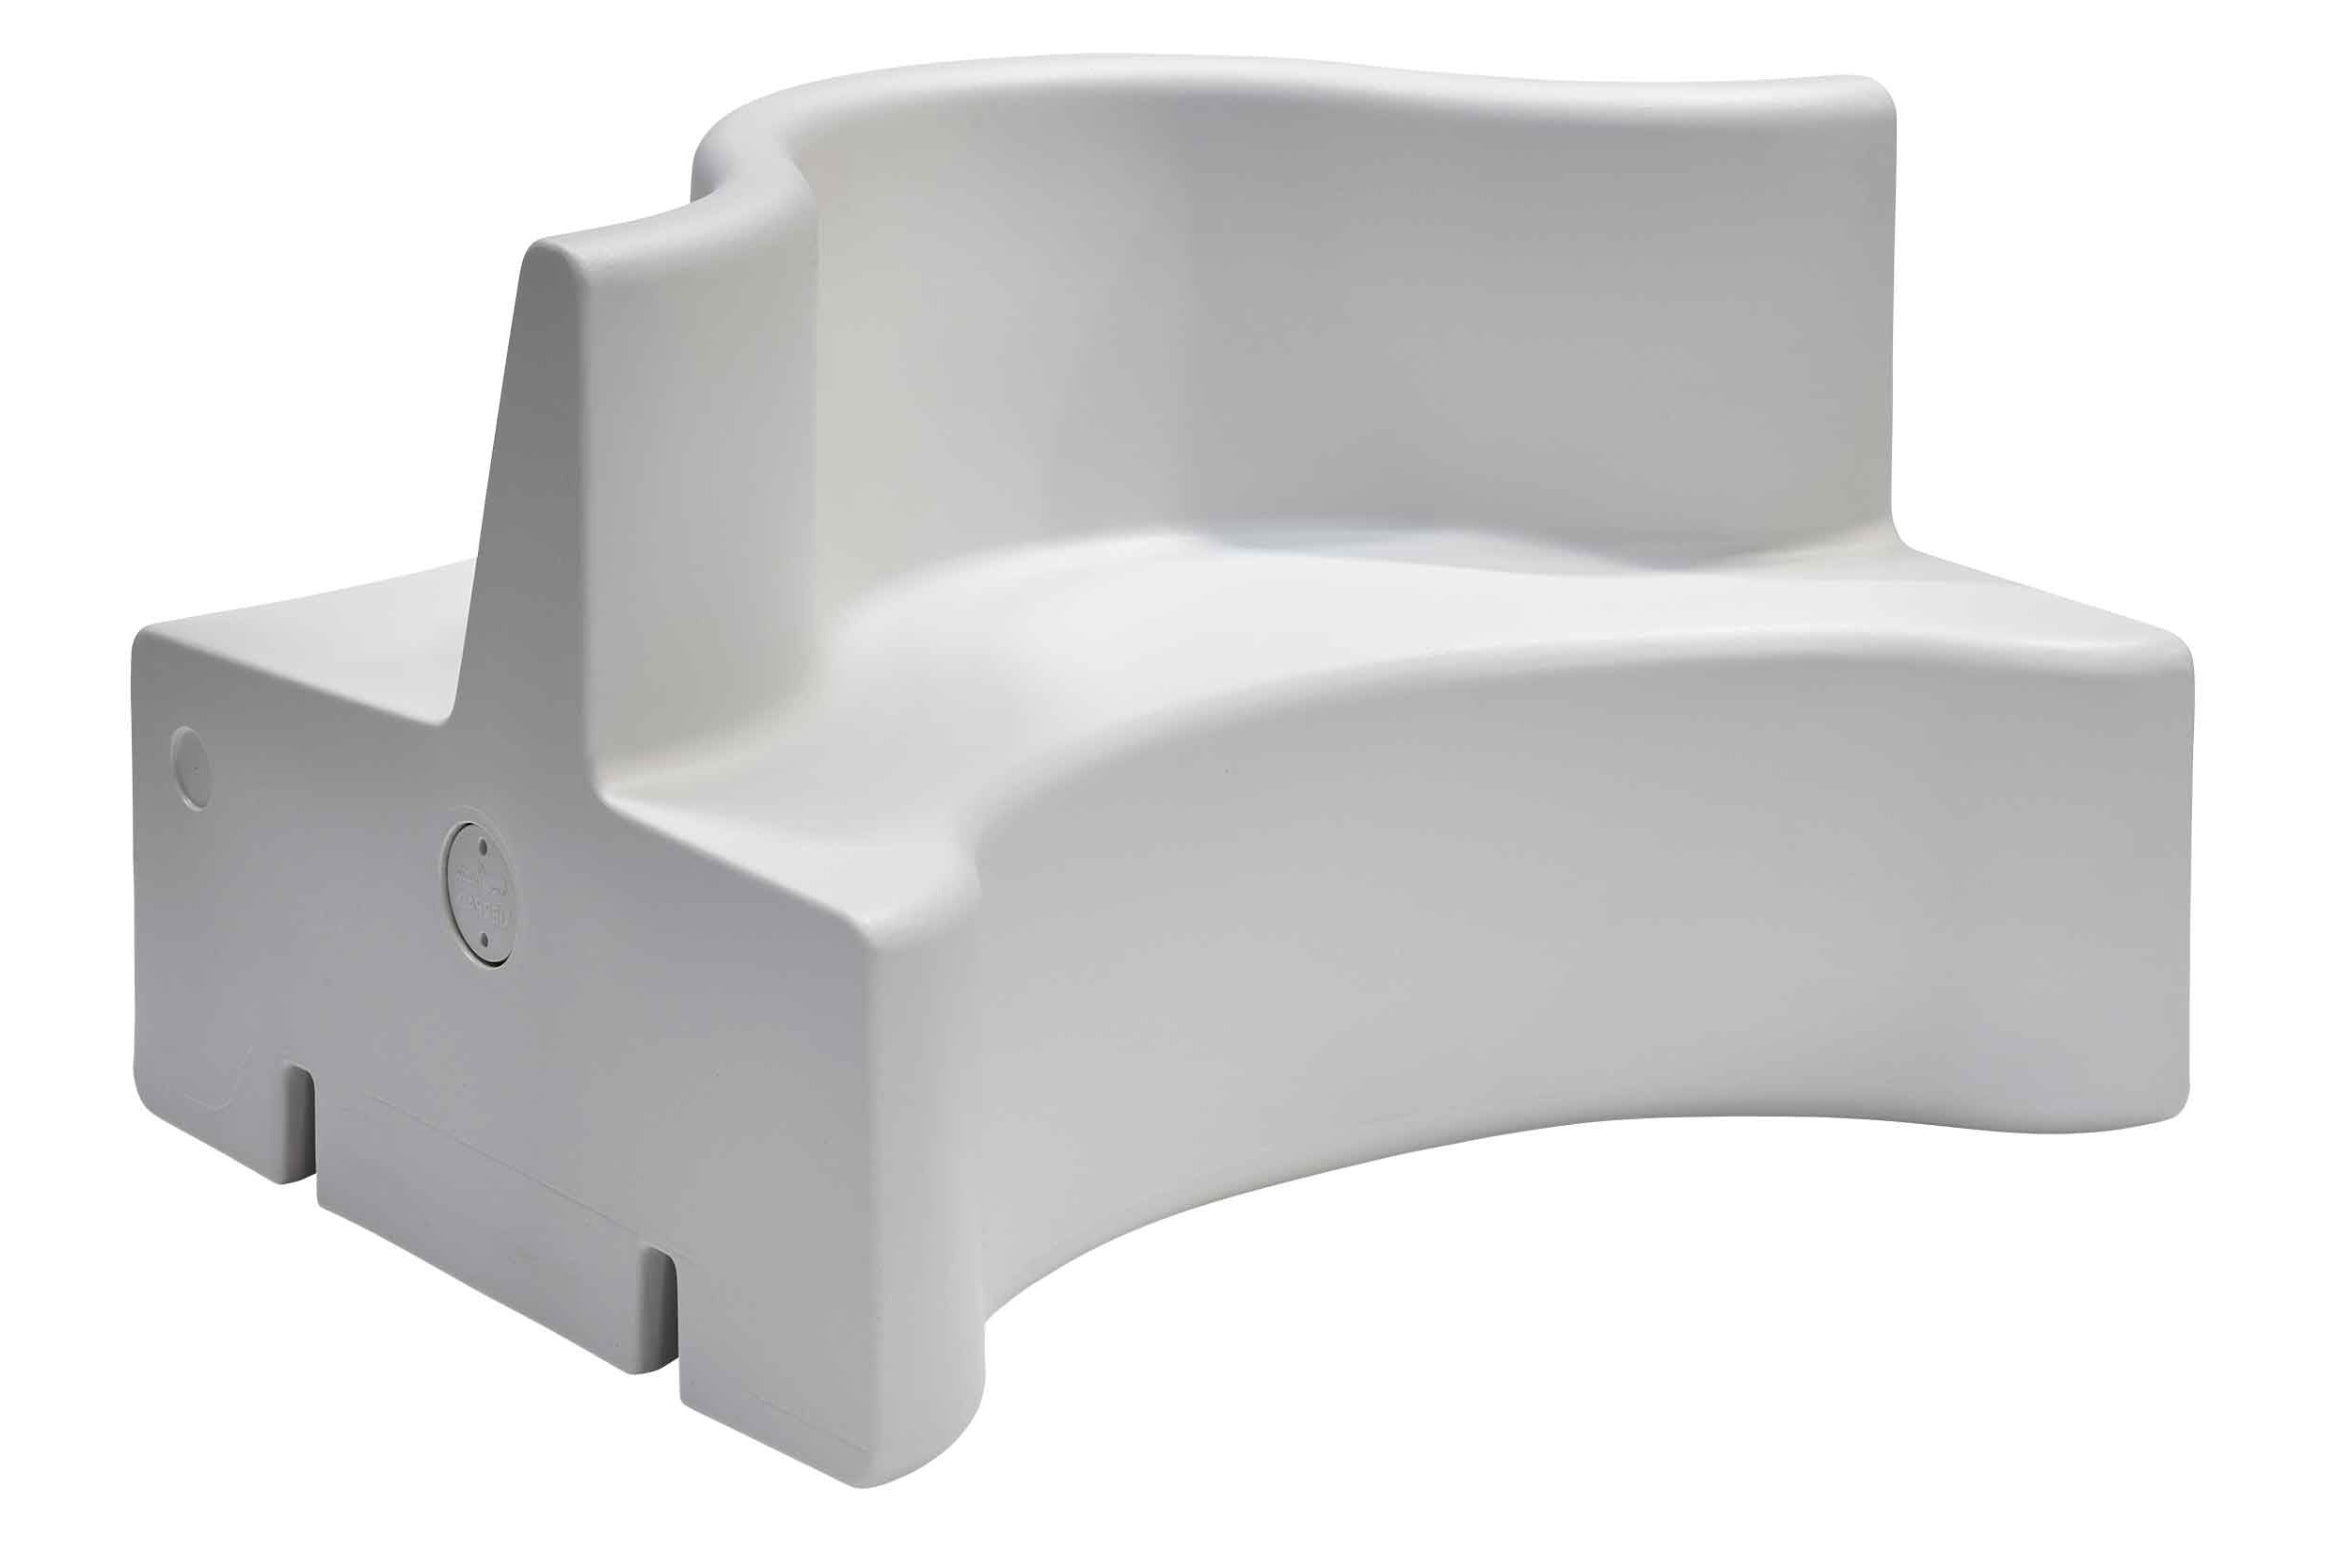 Sofa modułowa zewnętrzna CLOVERLEAF - moduł środkowy Verpan    Eye on Design